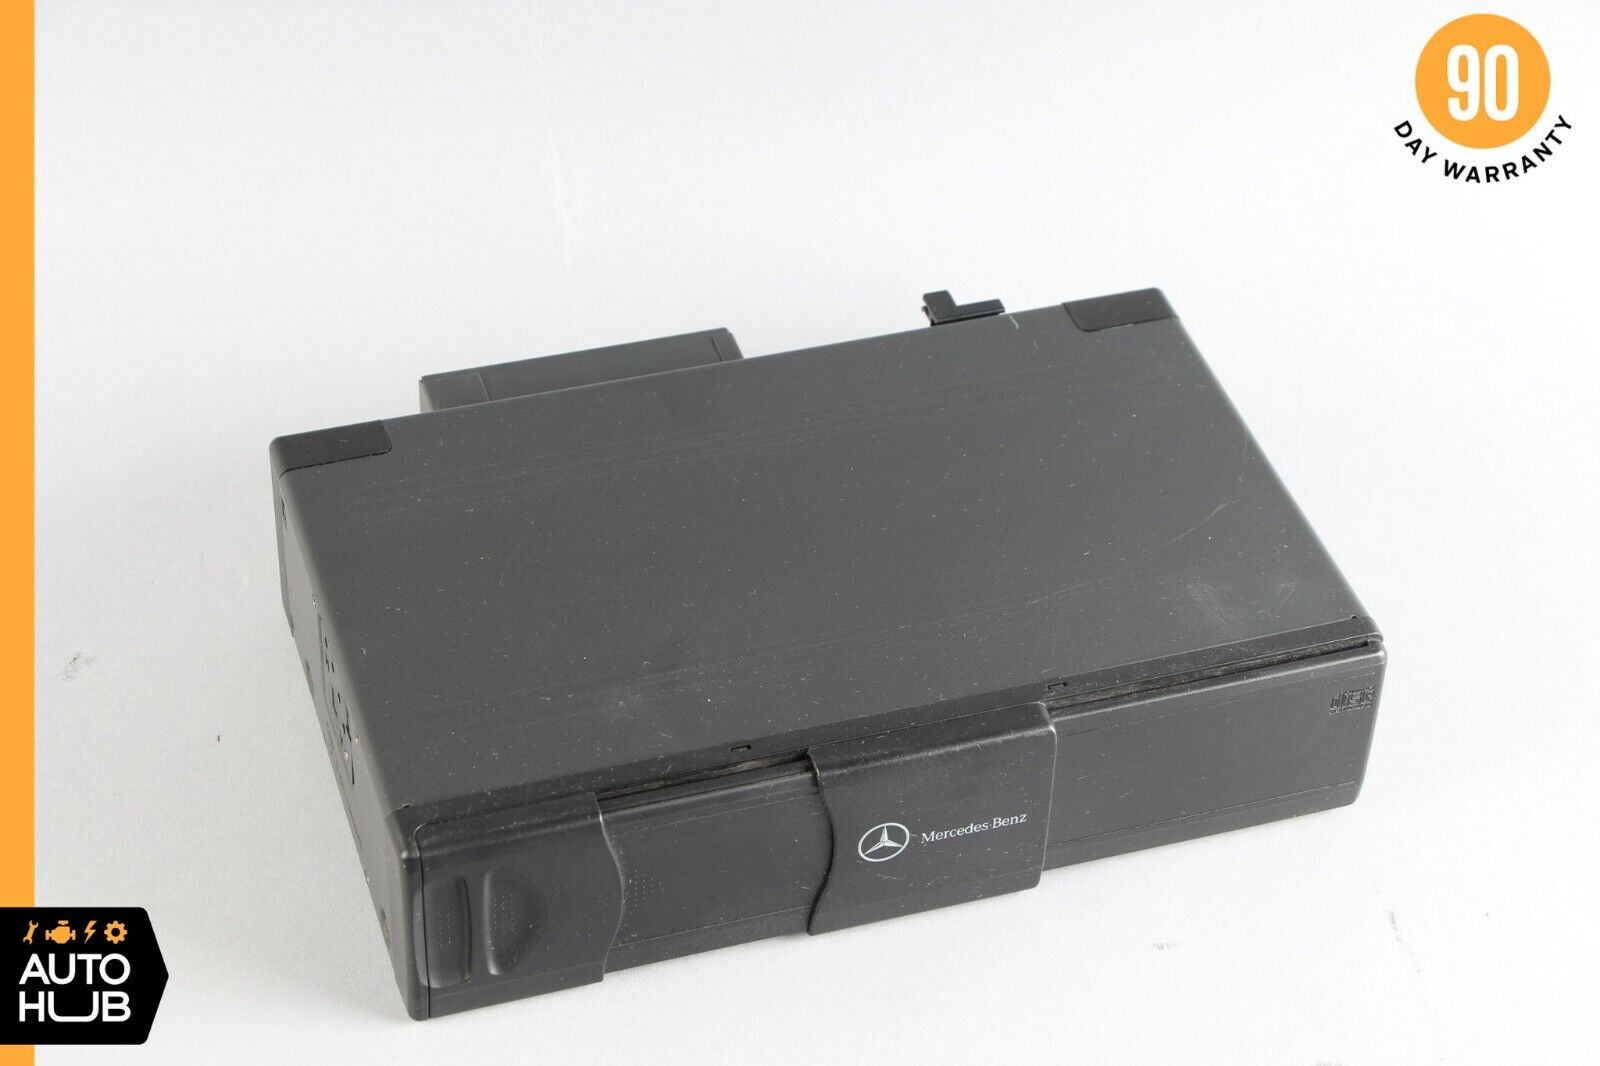 01-05 Mercedes W163 ML320 ML500 SLR CD Changer 6 Disk Player 1638203889 OEM